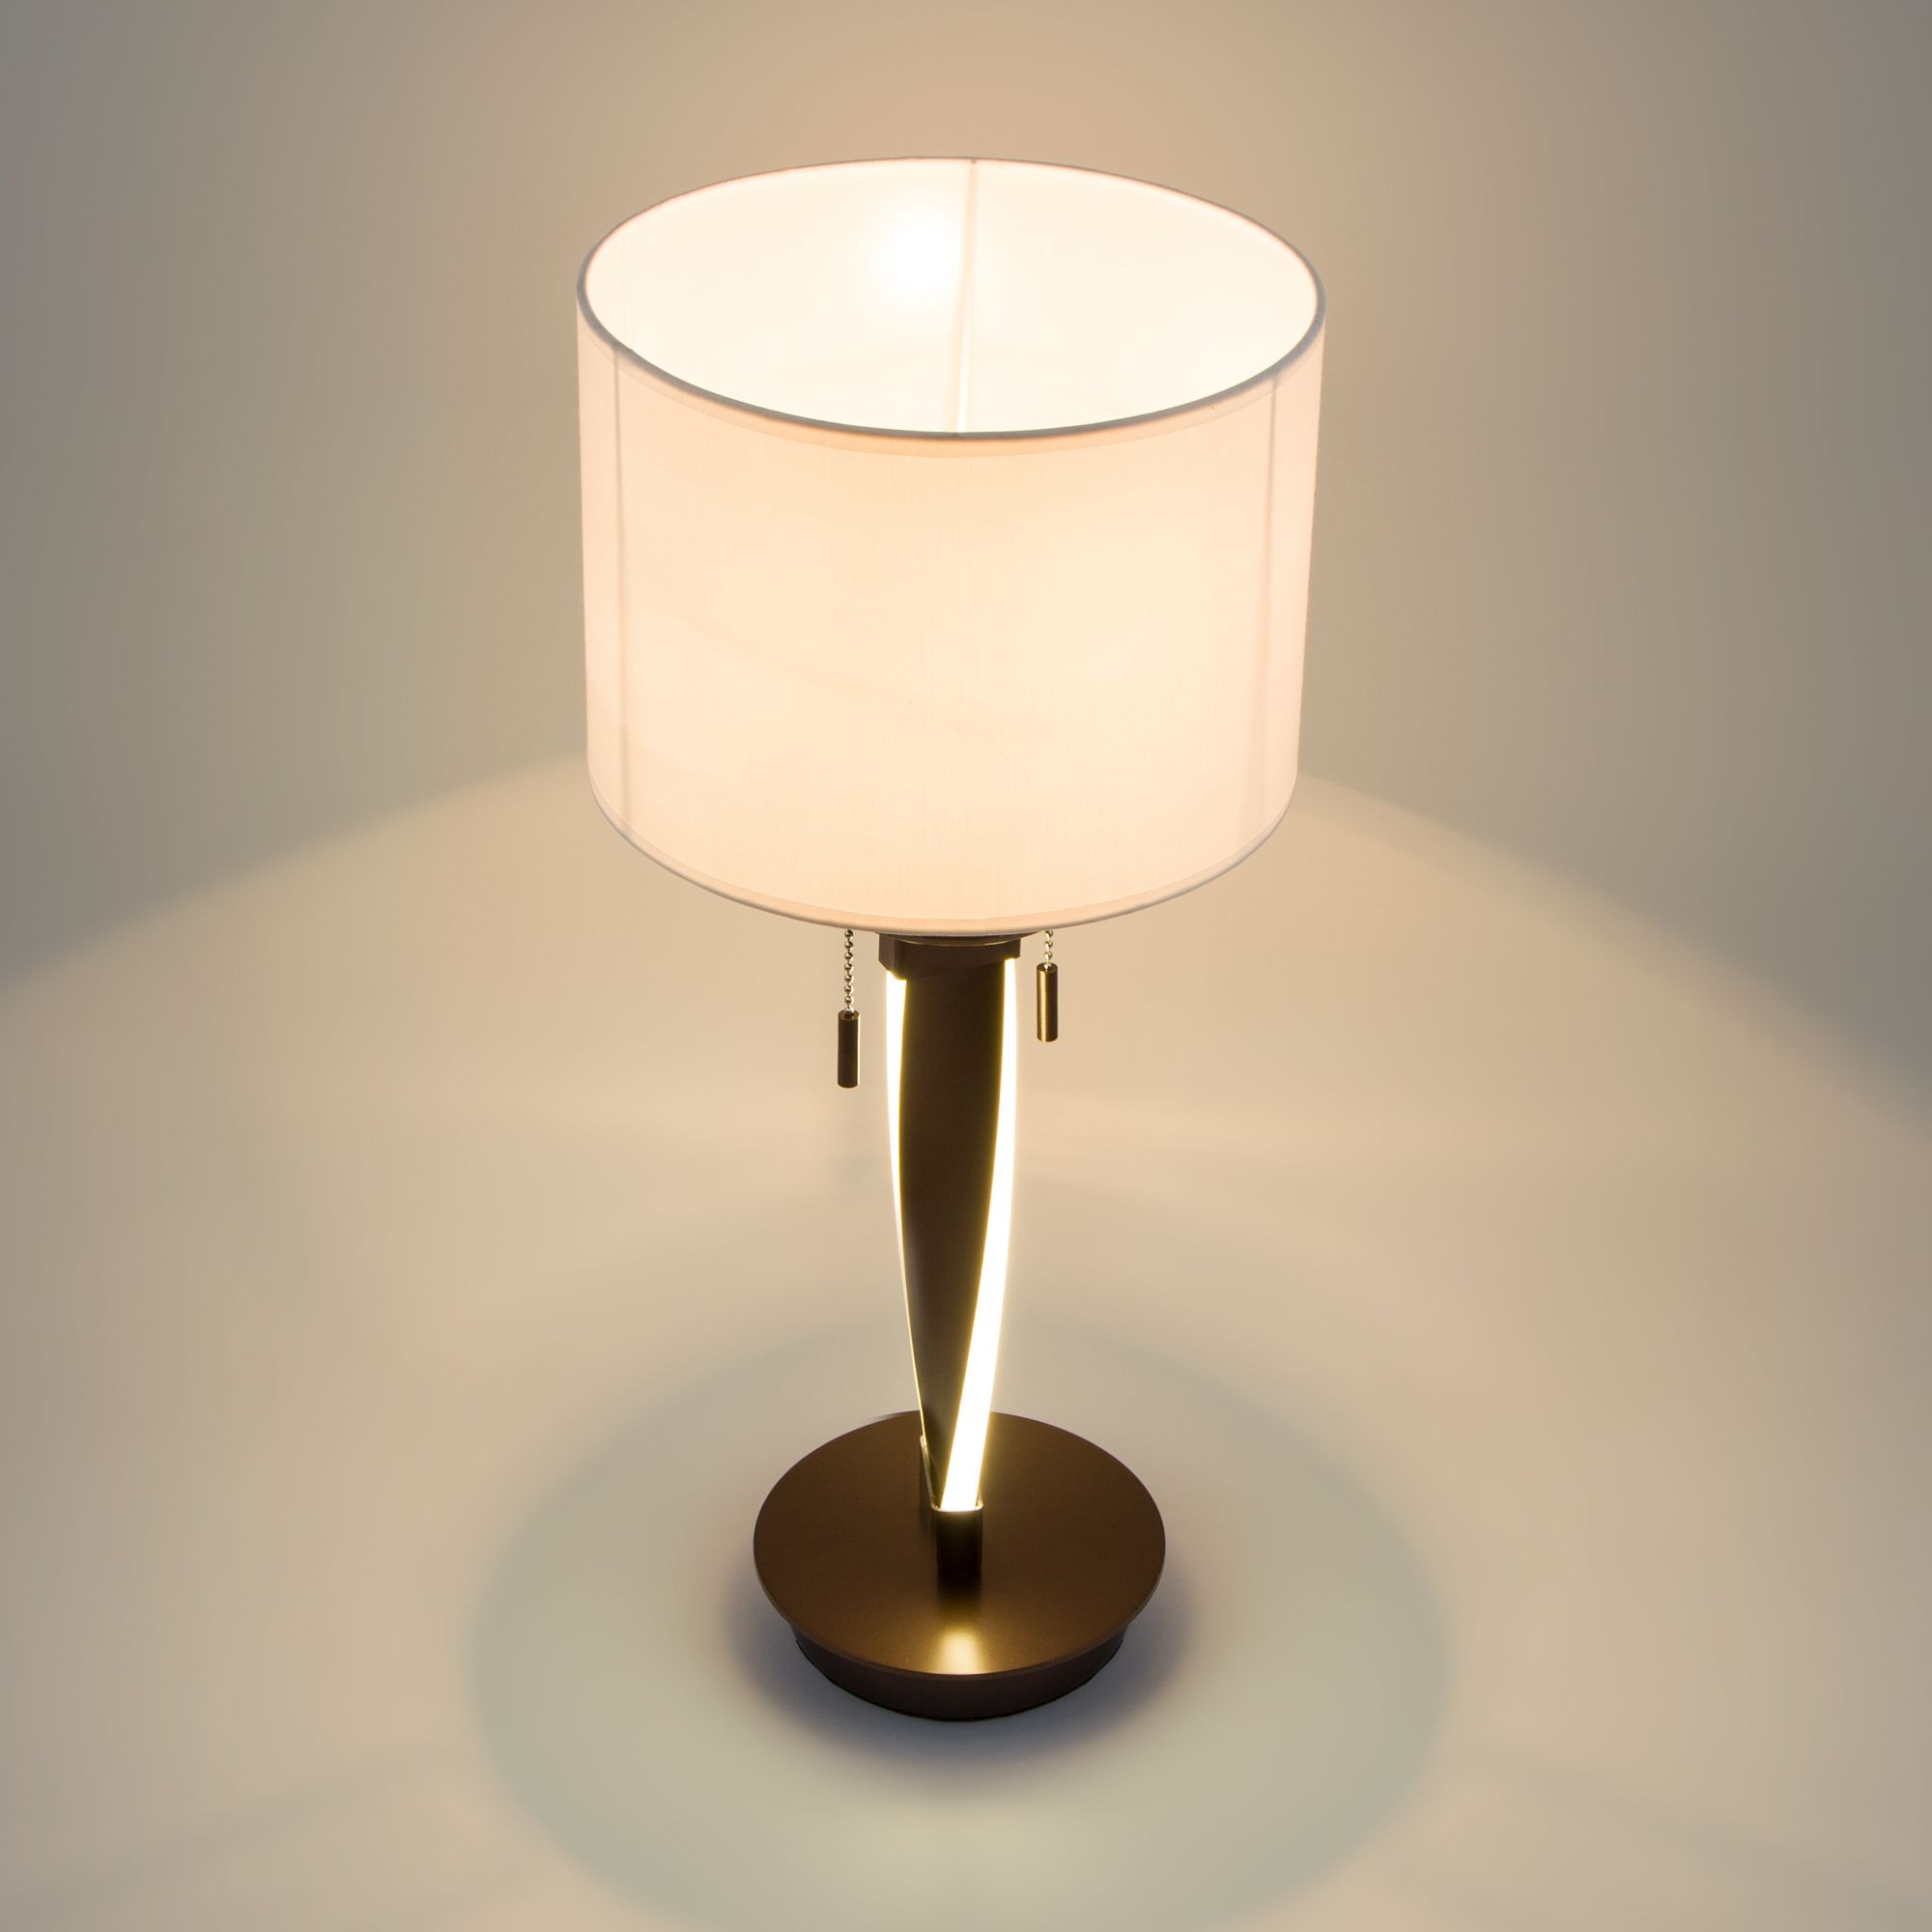 Настольный светодиодный светильник с тканевым абажуром Bogate's Titan 991 белый / коричневый. Фото 3